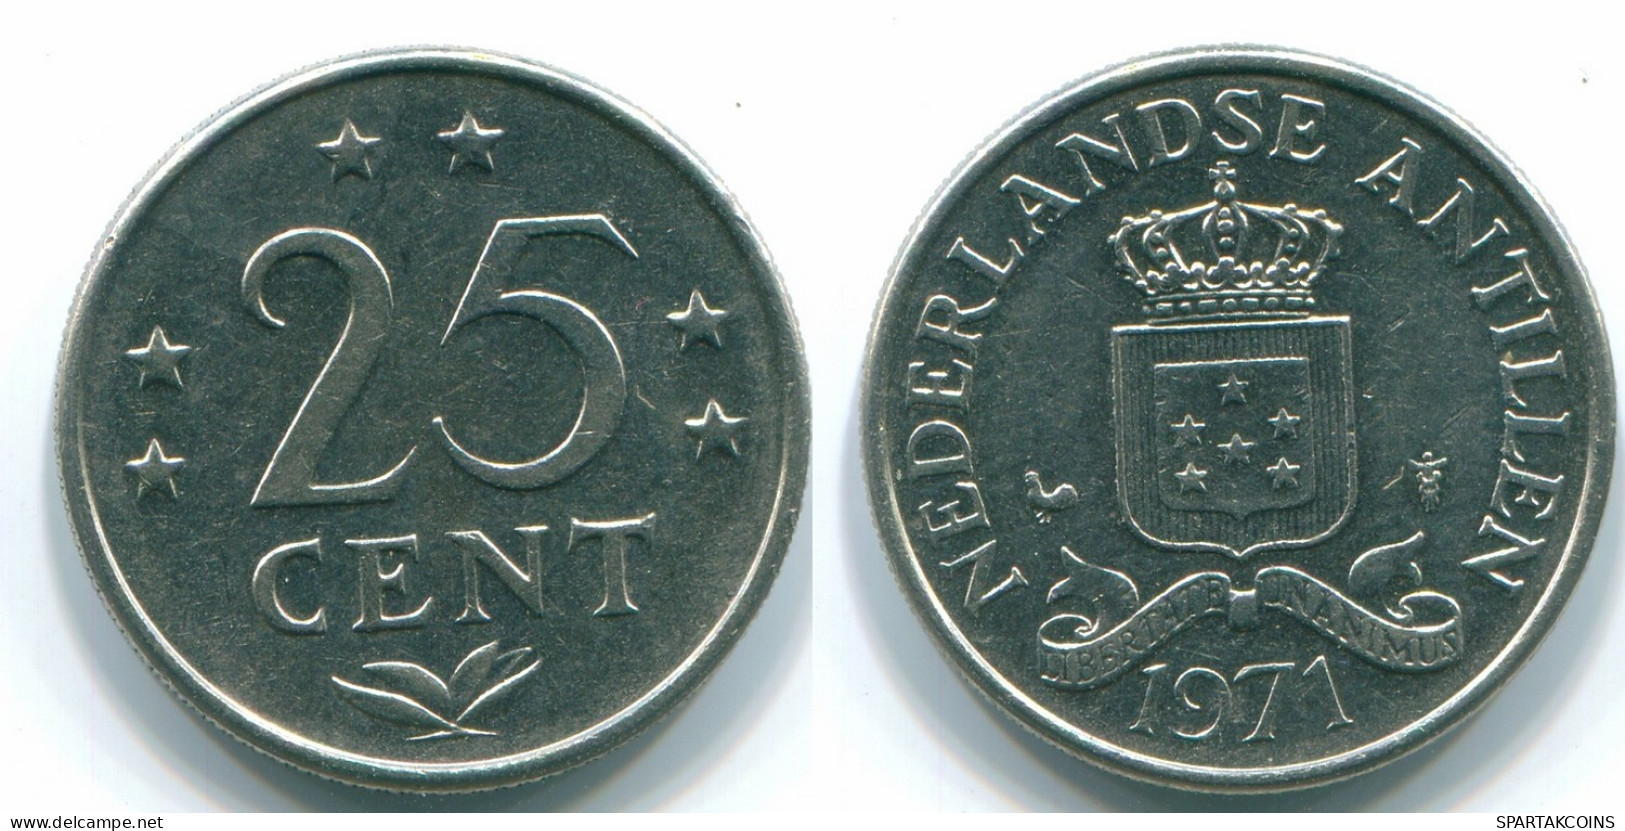 25 CENTS 1971 NIEDERLÄNDISCHE ANTILLEN Nickel Koloniale Münze #S11533.D.A - Antilles Néerlandaises